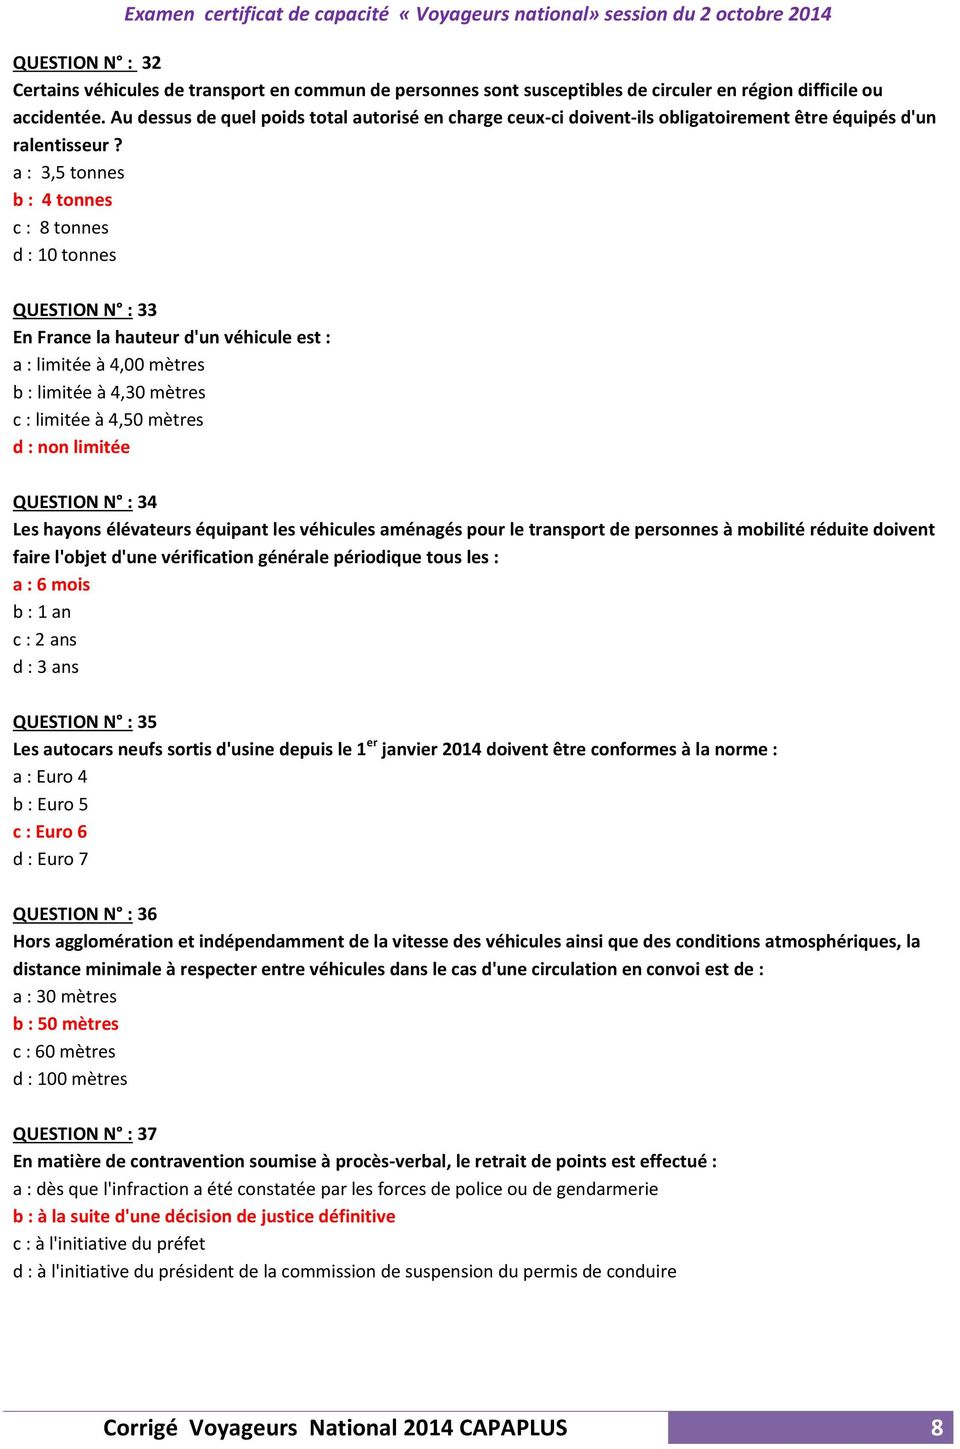 Corrigé des QCM. Corrigé Voyageurs National 2014 CAPAPLUS 2. Examen  certificat de capacité «Voyageurs national» session du 2 octobre PDF Free  Download